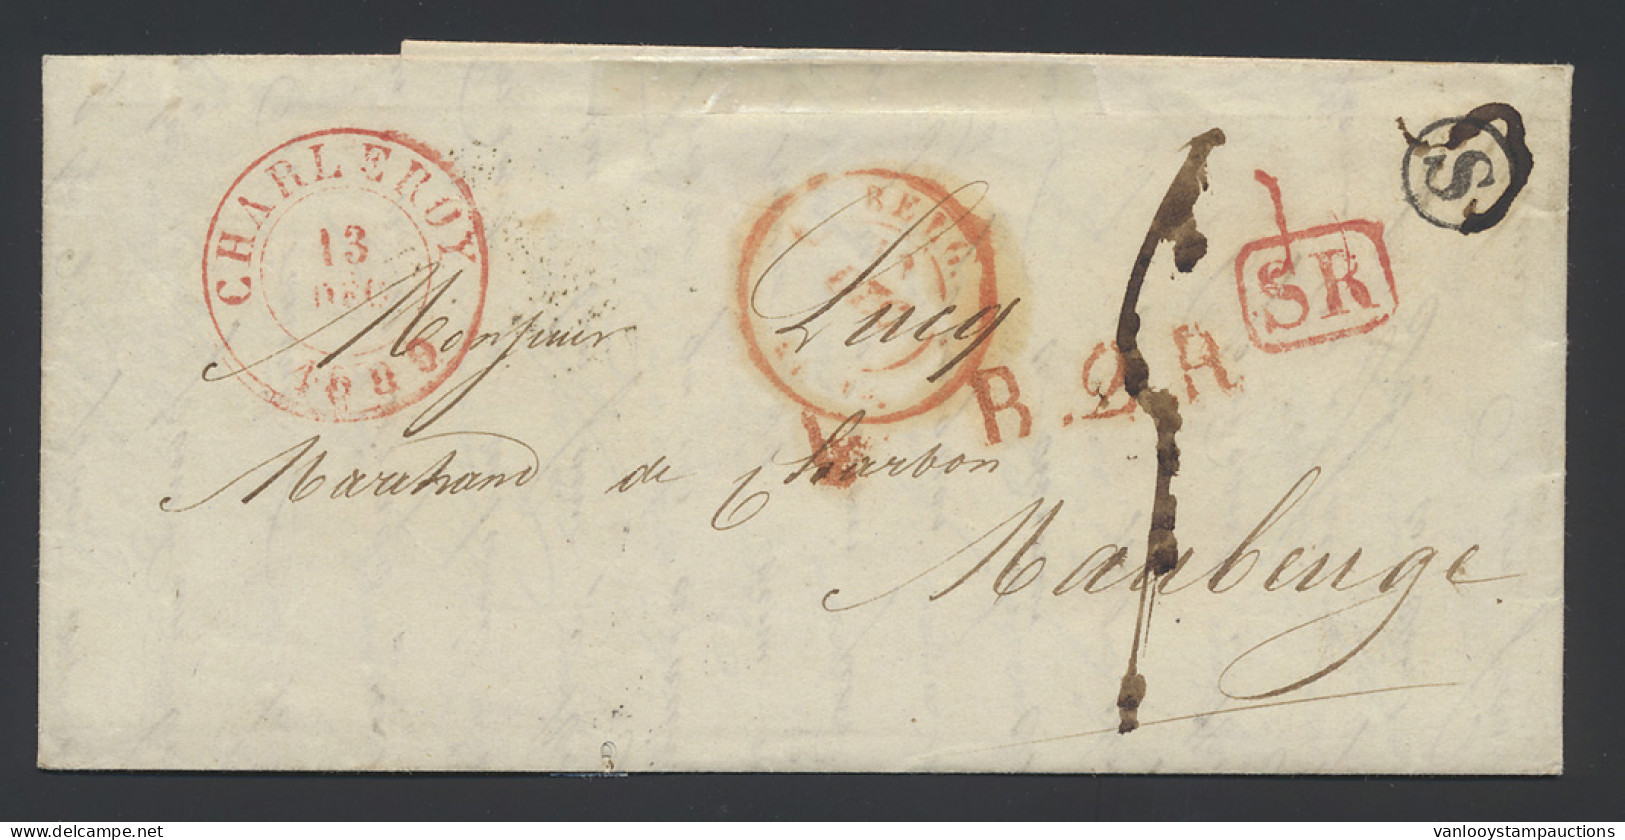 1839 Mooie Brief Met Postbusletter S In Cirkel, Rode SR-stempel, Dubbelcirkelstempel Charleroi 13 Dec 1839 Naar Maubeuge - 1830-1849 (Belgica Independiente)